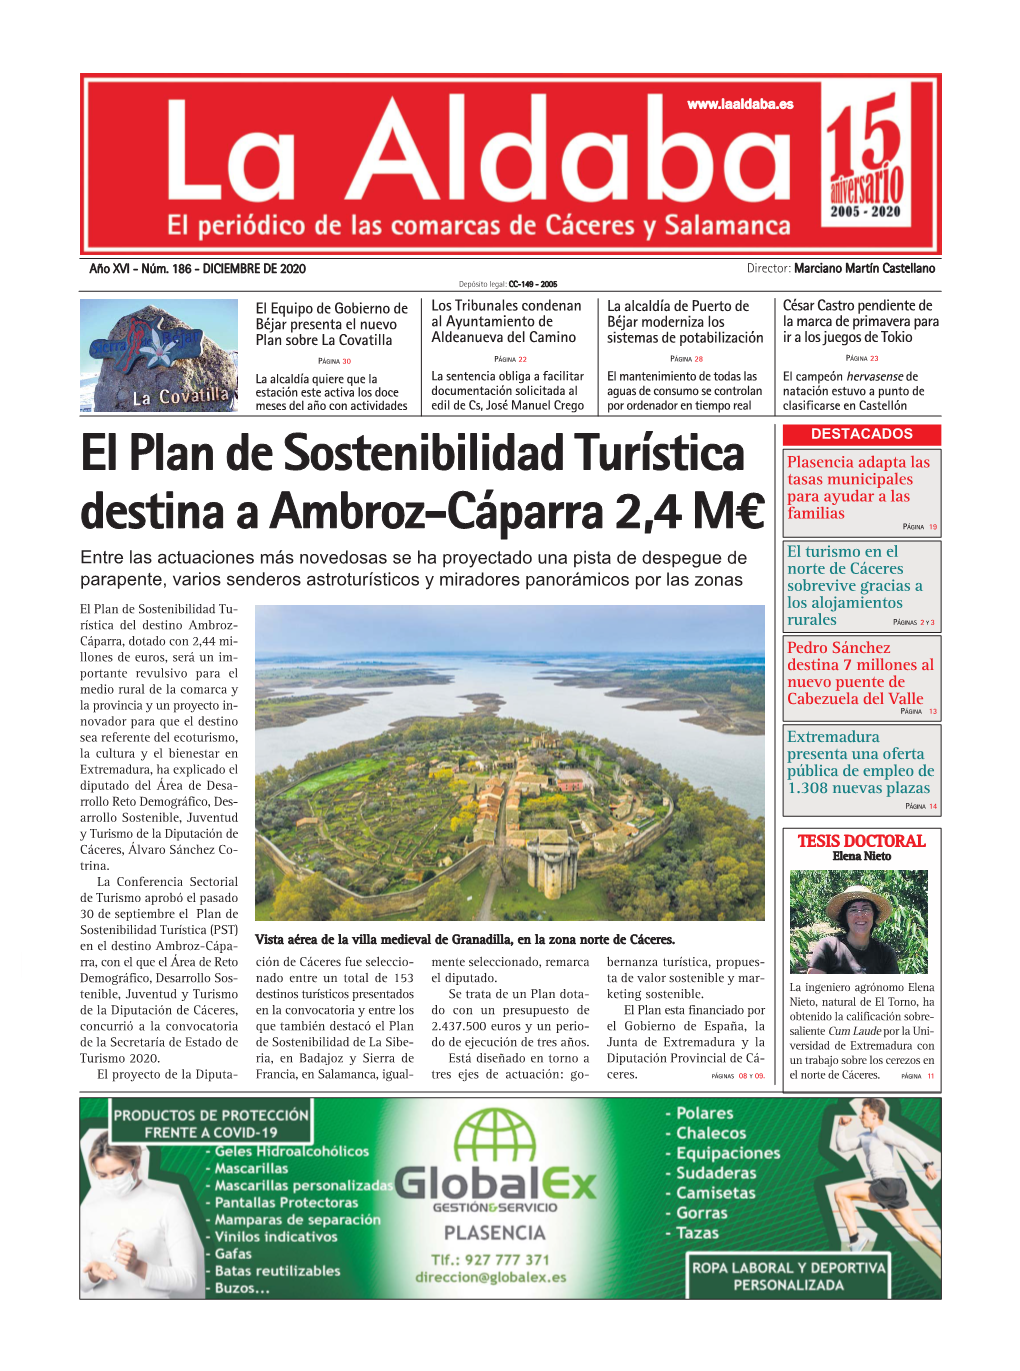 El Plan De Sostenibilidad Turística Destina a Ambroz-Cáparra 2,4 M€